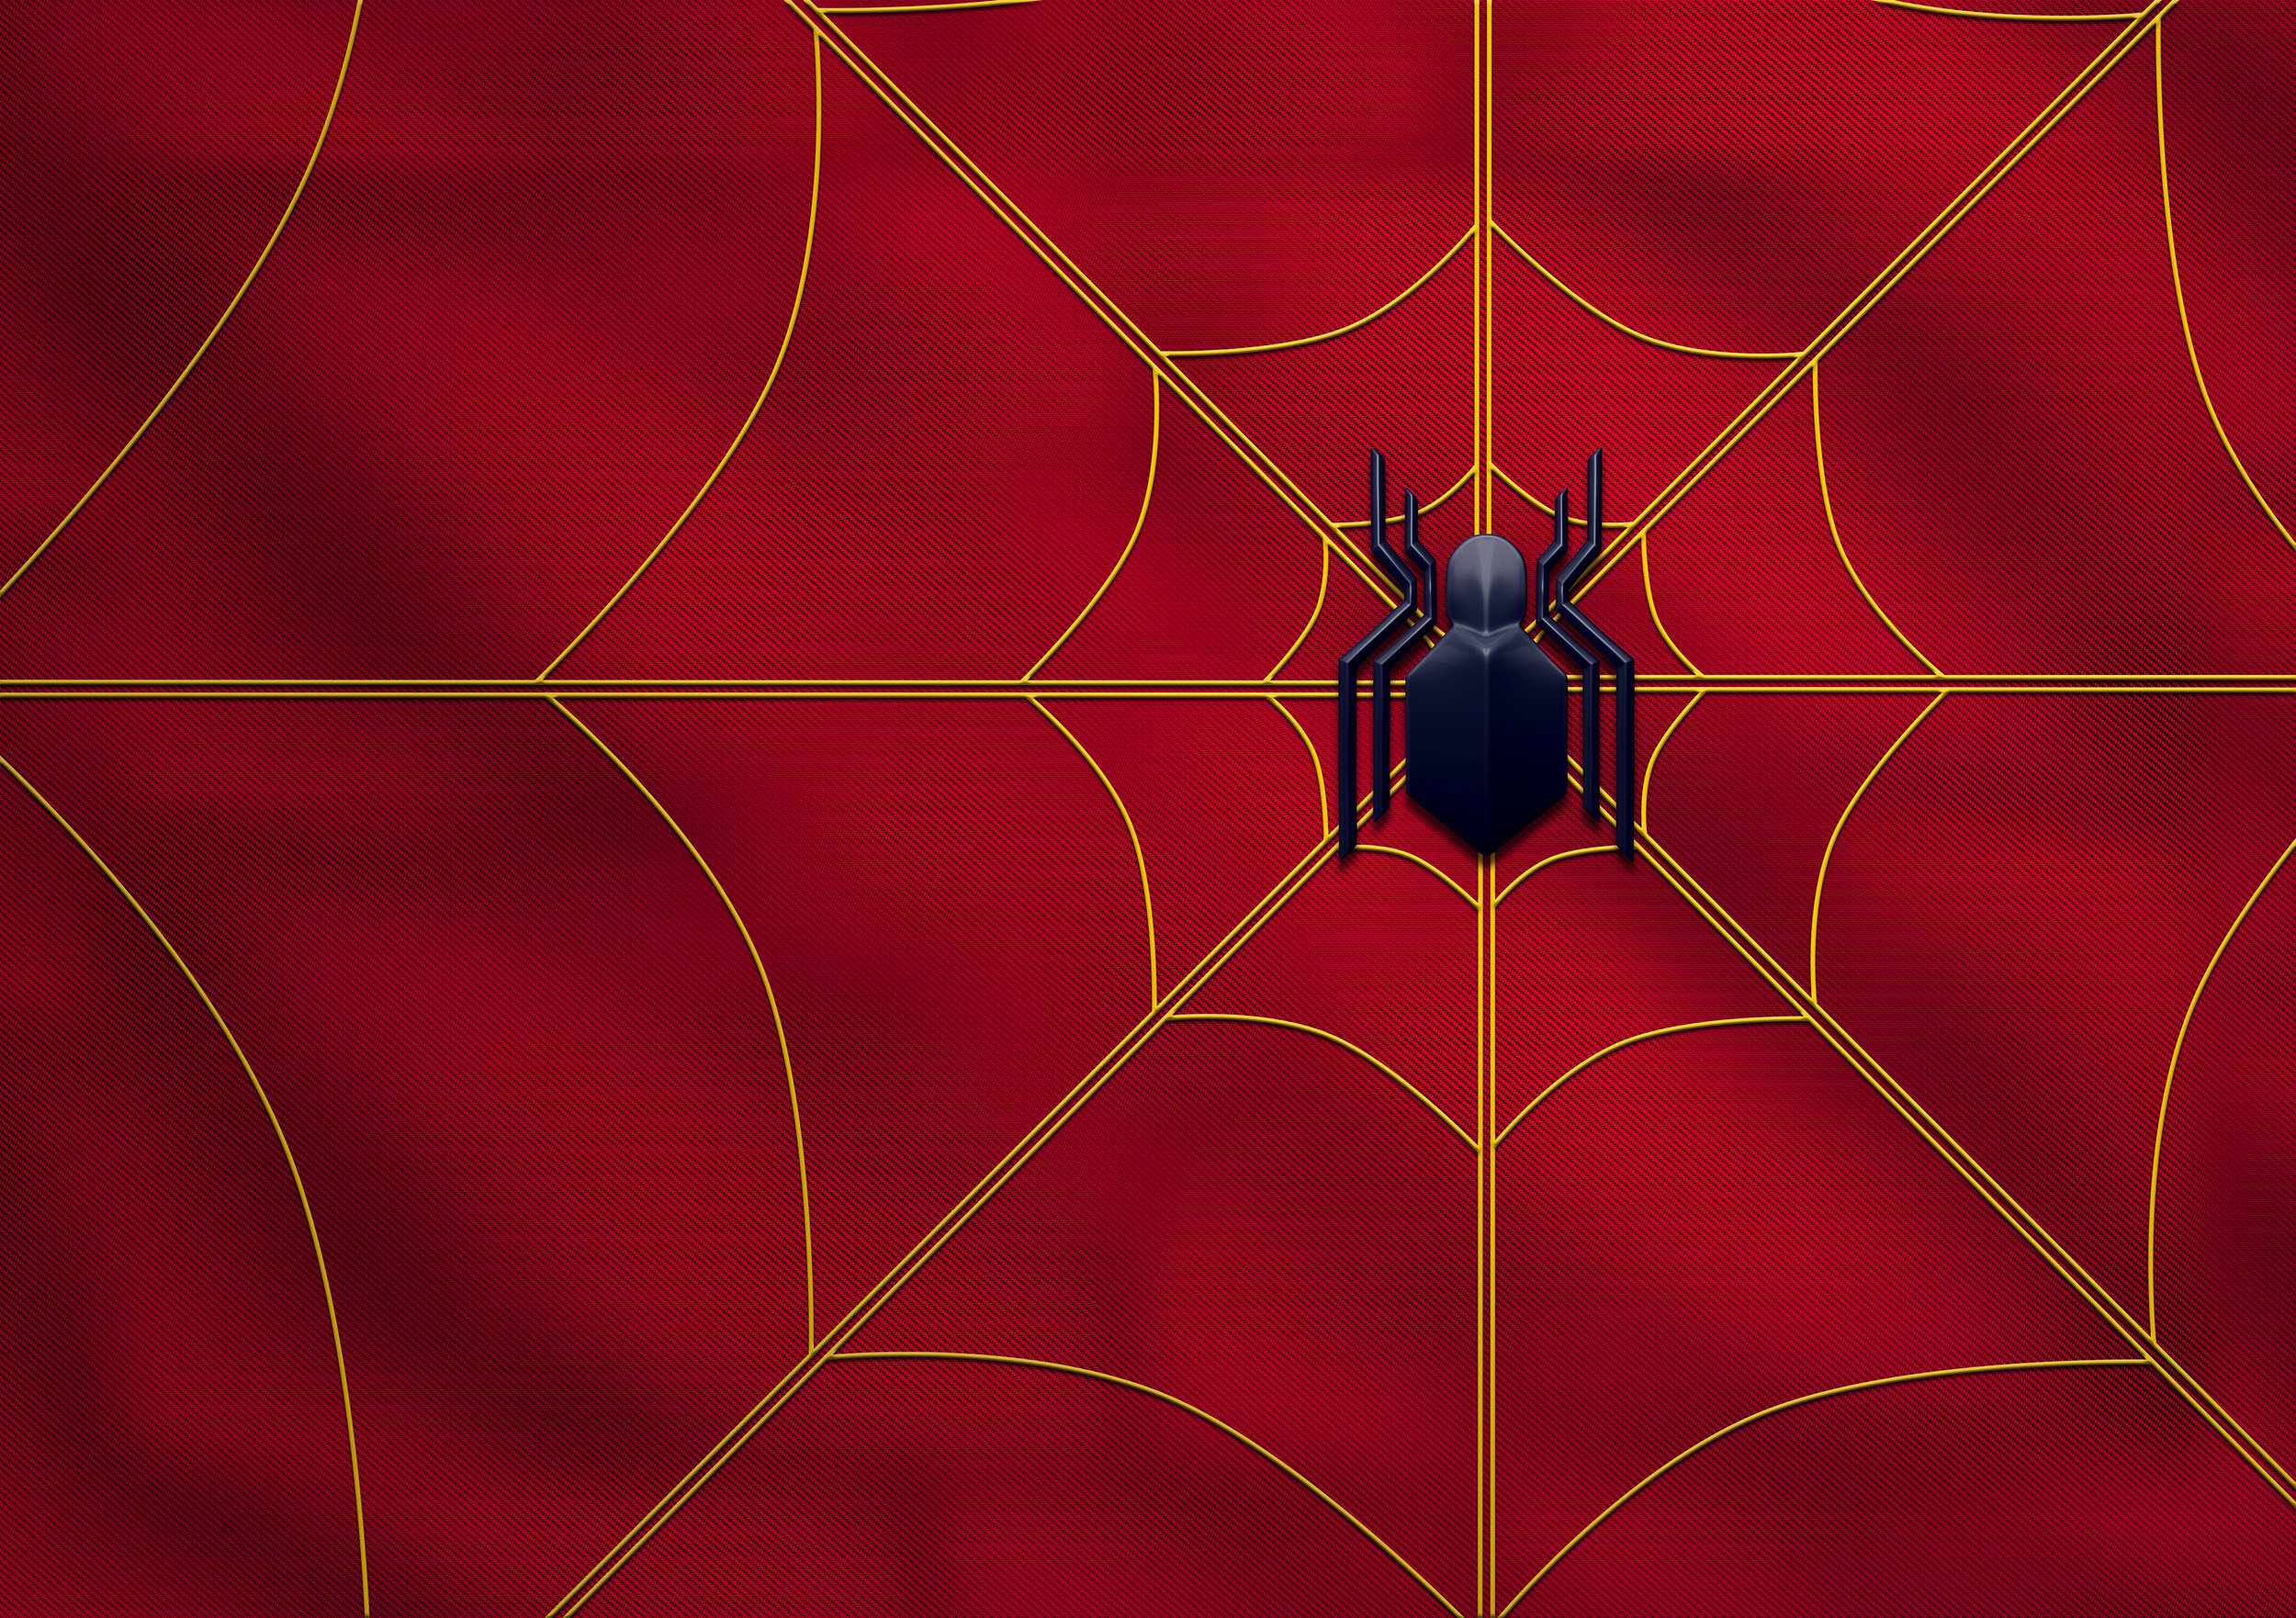 Spiderman2_Toolkit_01_Fin1.jpg